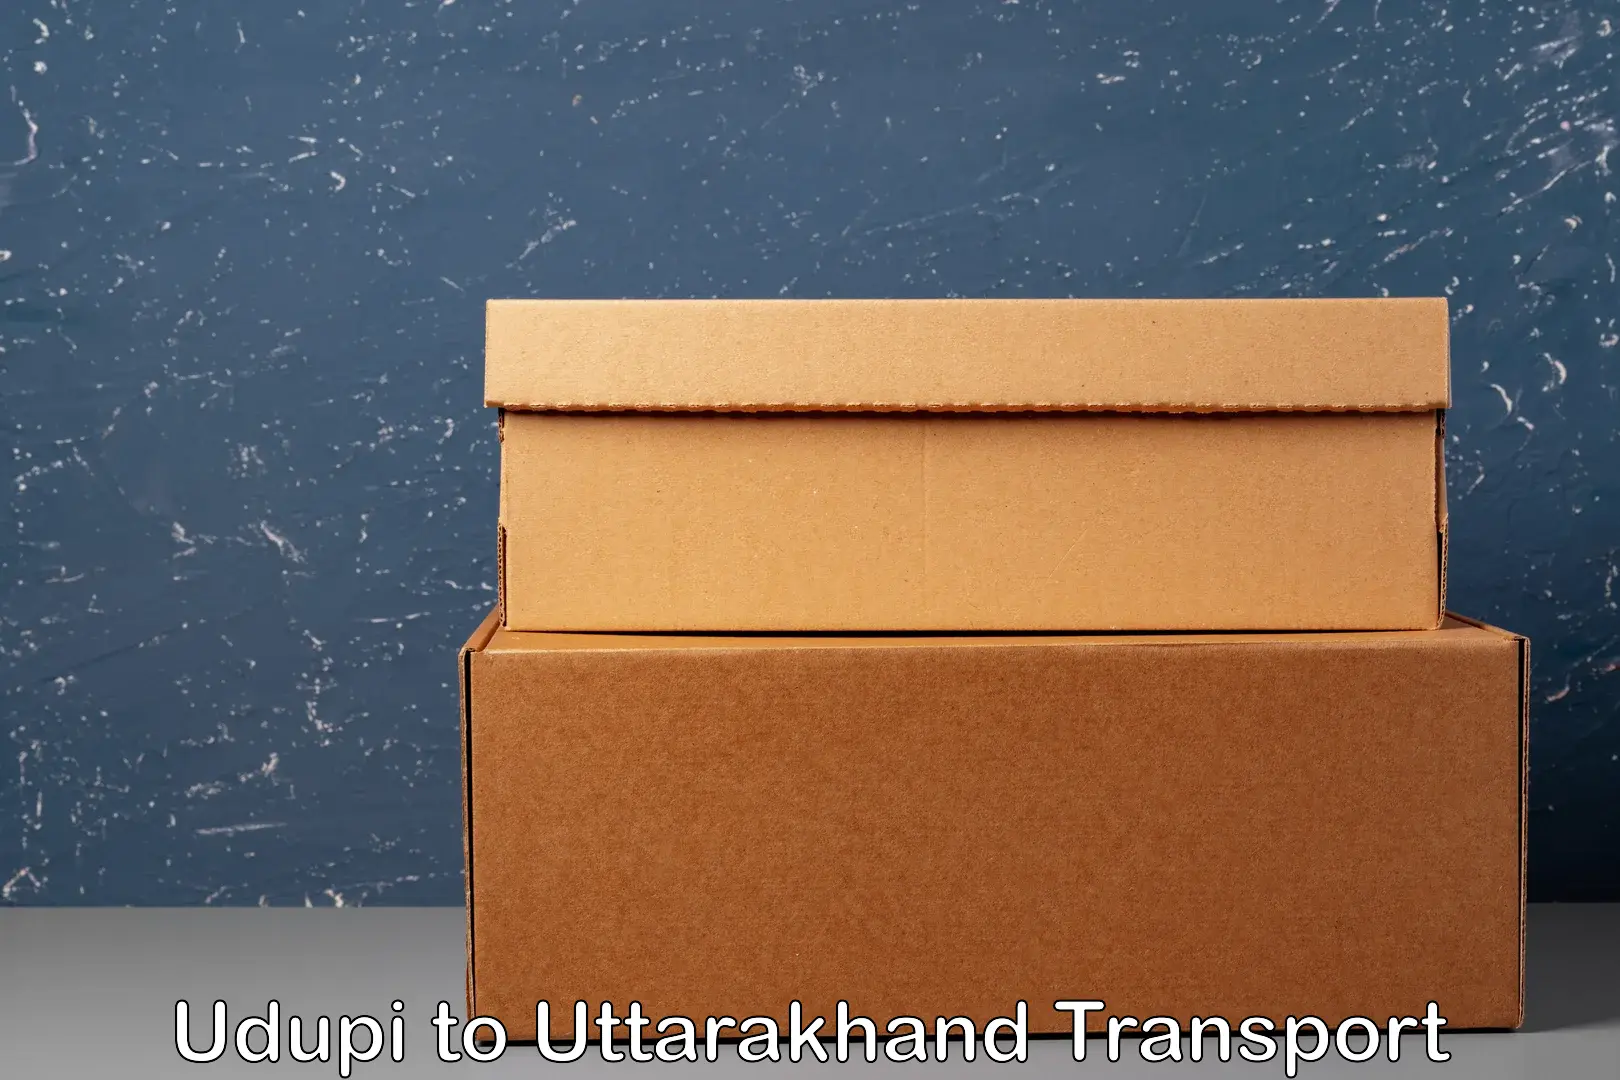 Lorry transport service Udupi to Uttarakhand